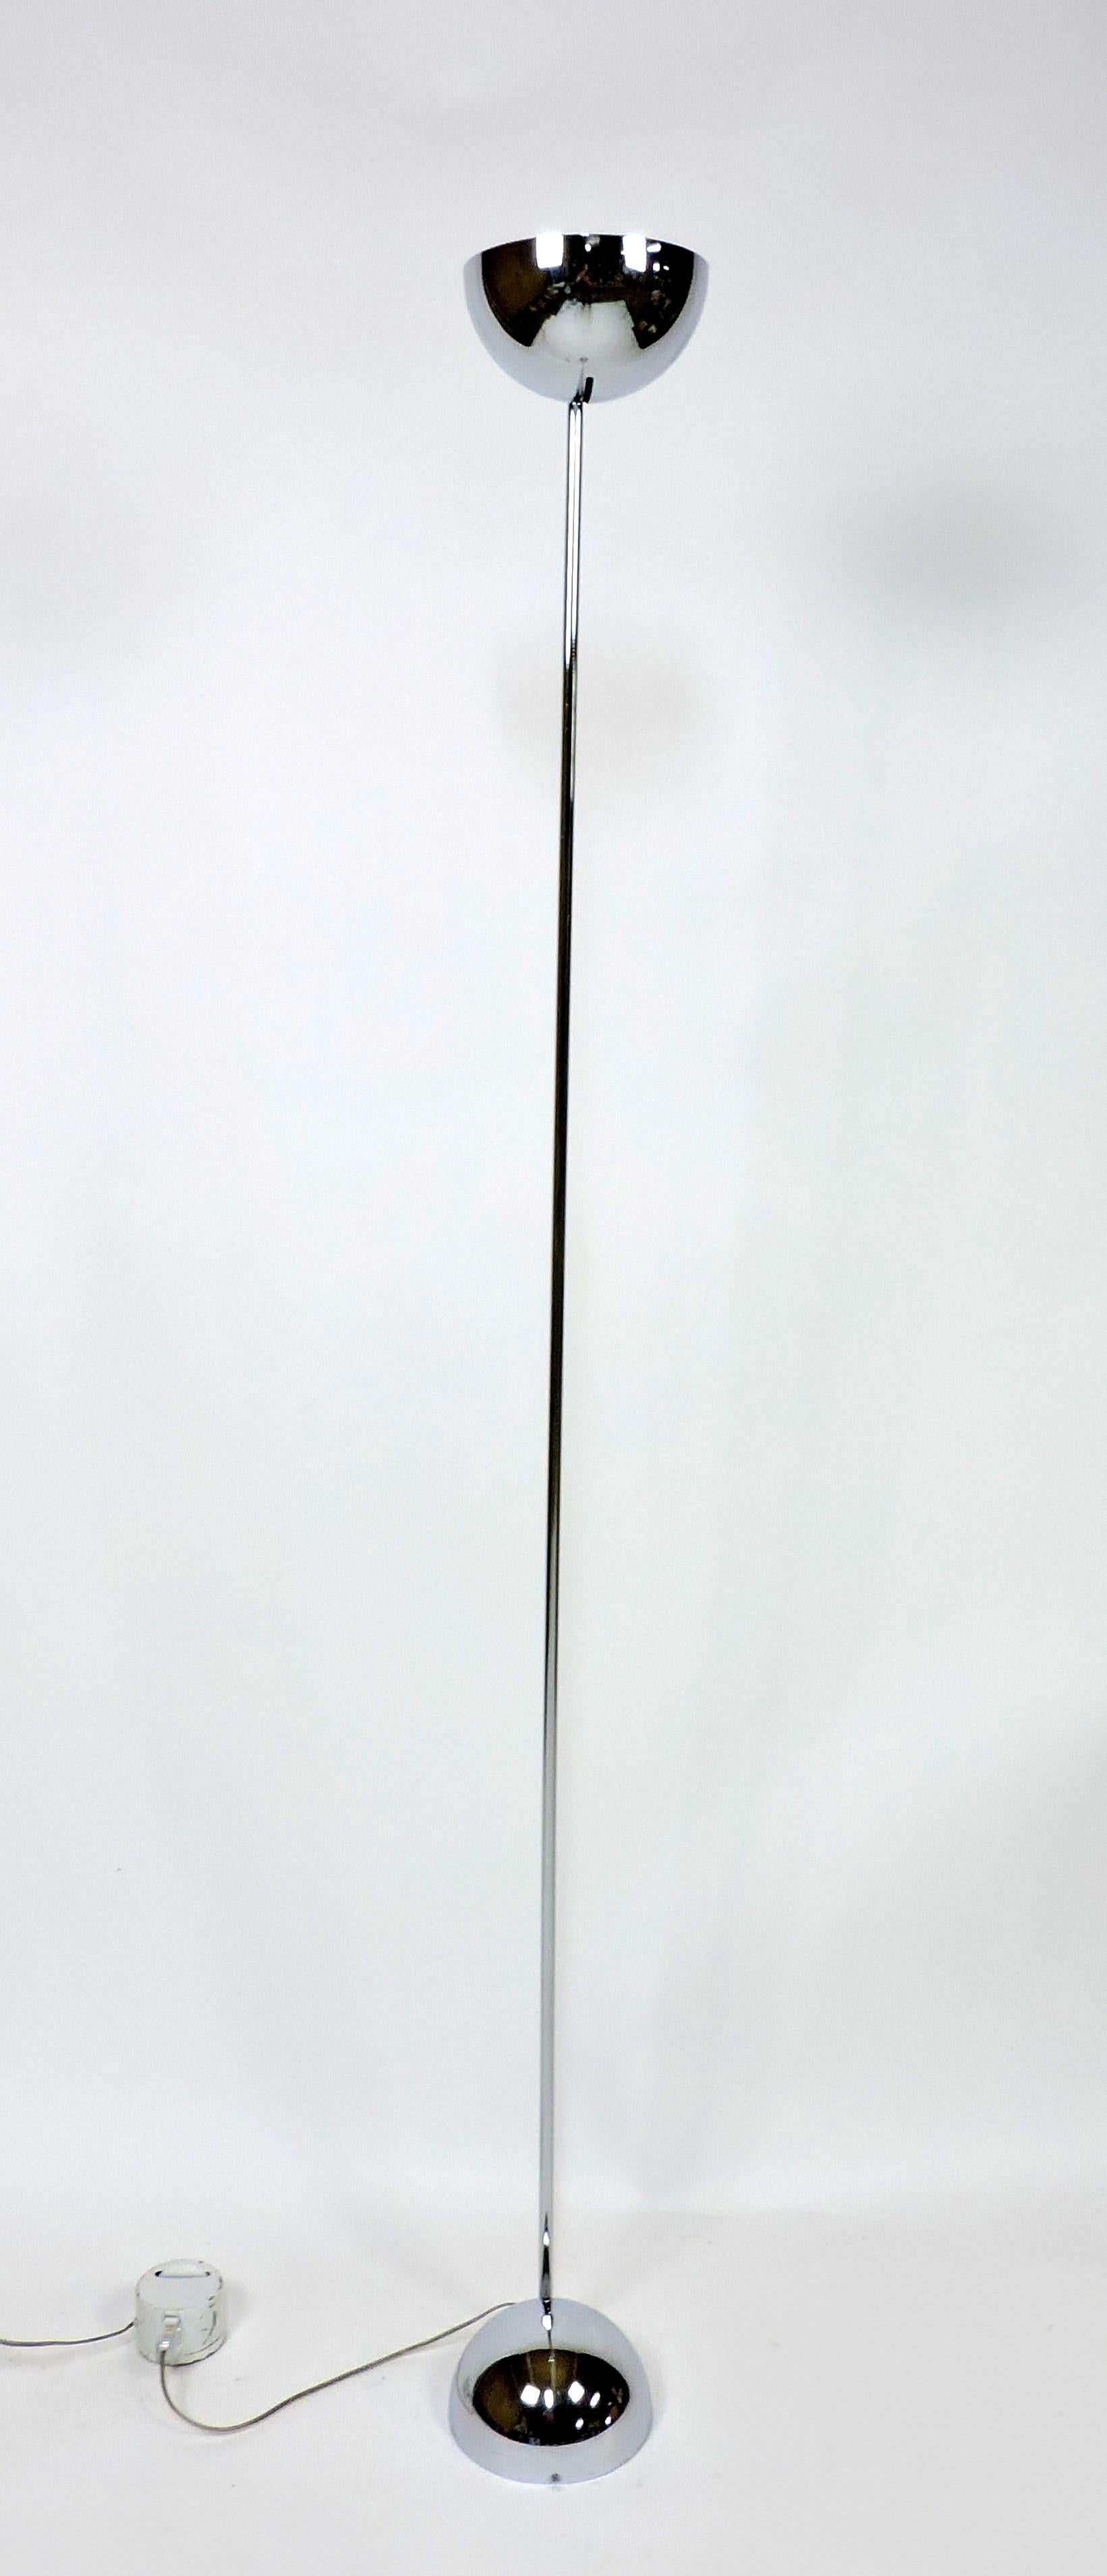 Diese schöne und minimalistische Stehleuchte wurde von Robert Sonneman entworfen und von Kovacs hergestellt. Die Lampe ist aus hochwertigem Chrom gefertigt und ist schwer und gut verarbeitet. Sie besteht aus zwei Halbkugeln, einer oberen und einer